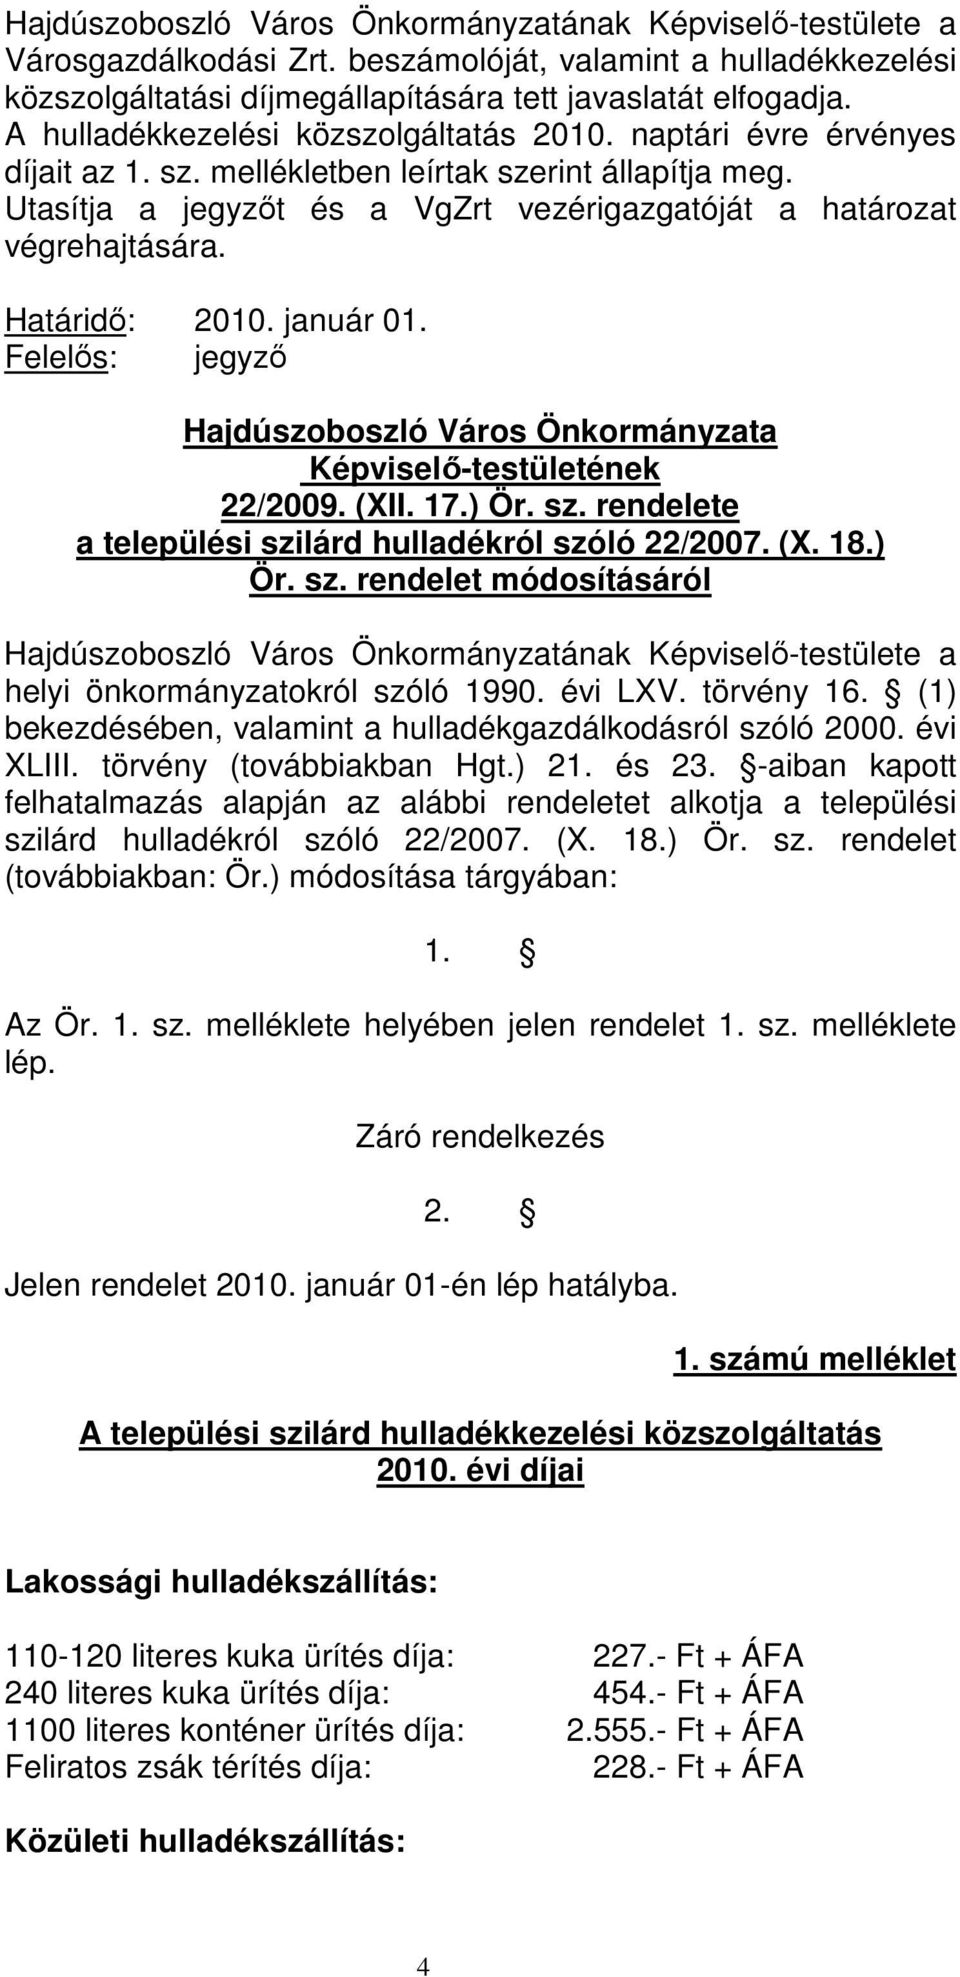 Felelıs: jegyzı Hajdúszoboszló Város Önkormányzata Képviselı-testületének 22/2009. (XII. 17.) Ör. sz. rendelete a települési szilárd hulladékról szóló 22/2007. (X. 18.) Ör. sz. rendelet módosításáról helyi önkormányzatokról szóló 1990.